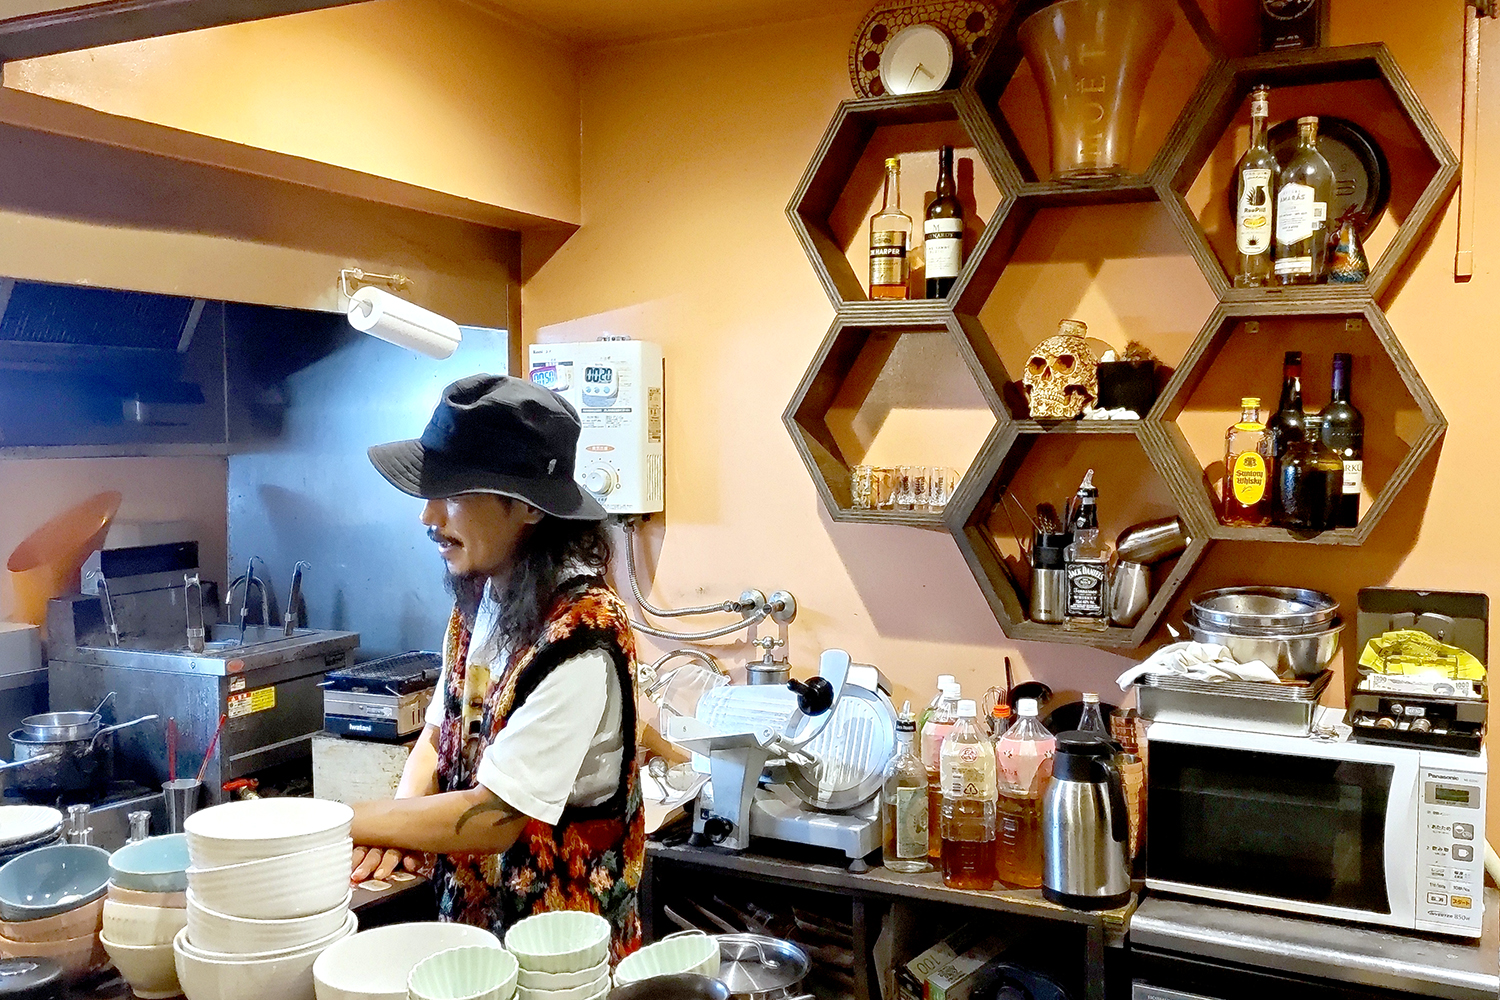 「ゆくゆくは焼き鳥とラーメンを出すお店をつくりたい」とこれからの展望を語る前田さん。